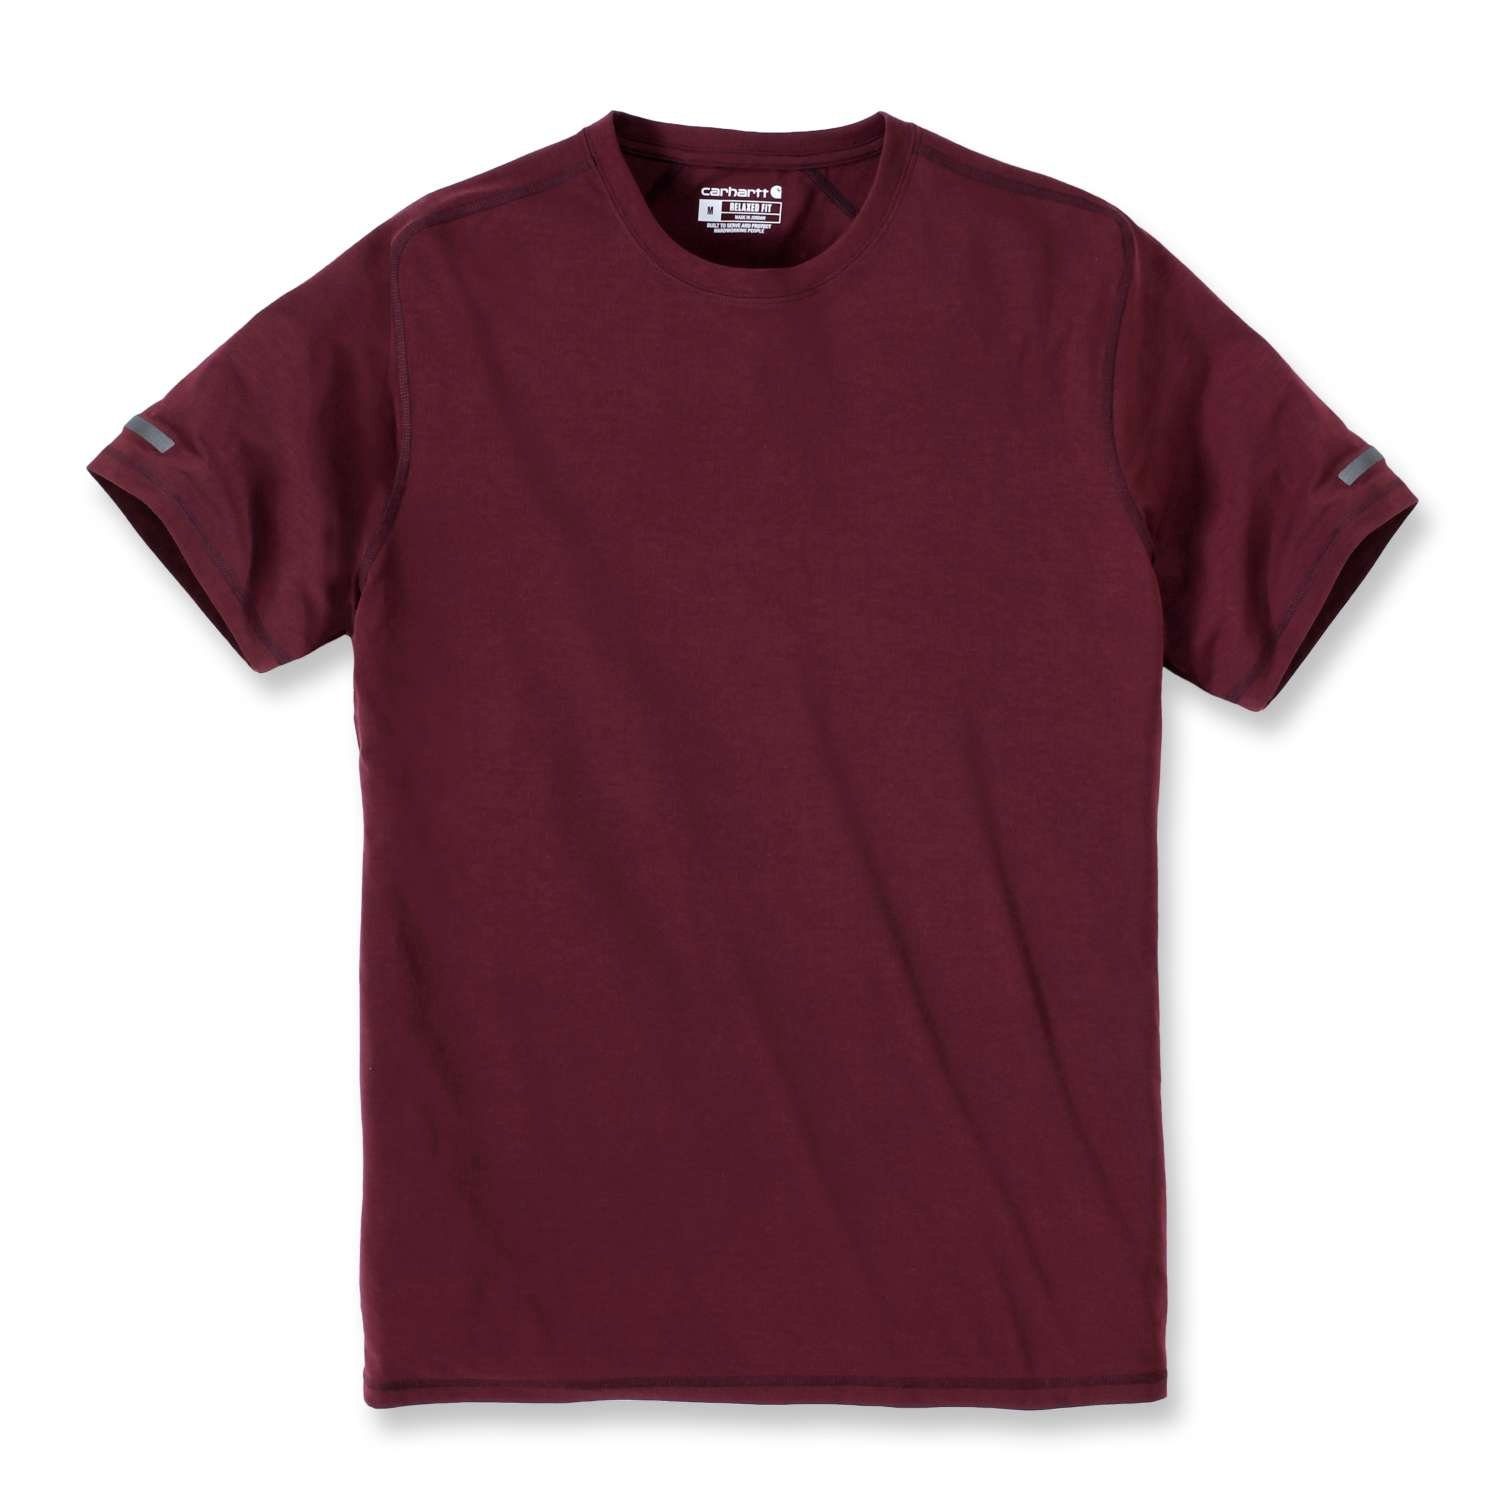 Carhartt T-Shirt Carhartt Herren T-Shirt Extremes Relaxed Fit Adult bordeaux